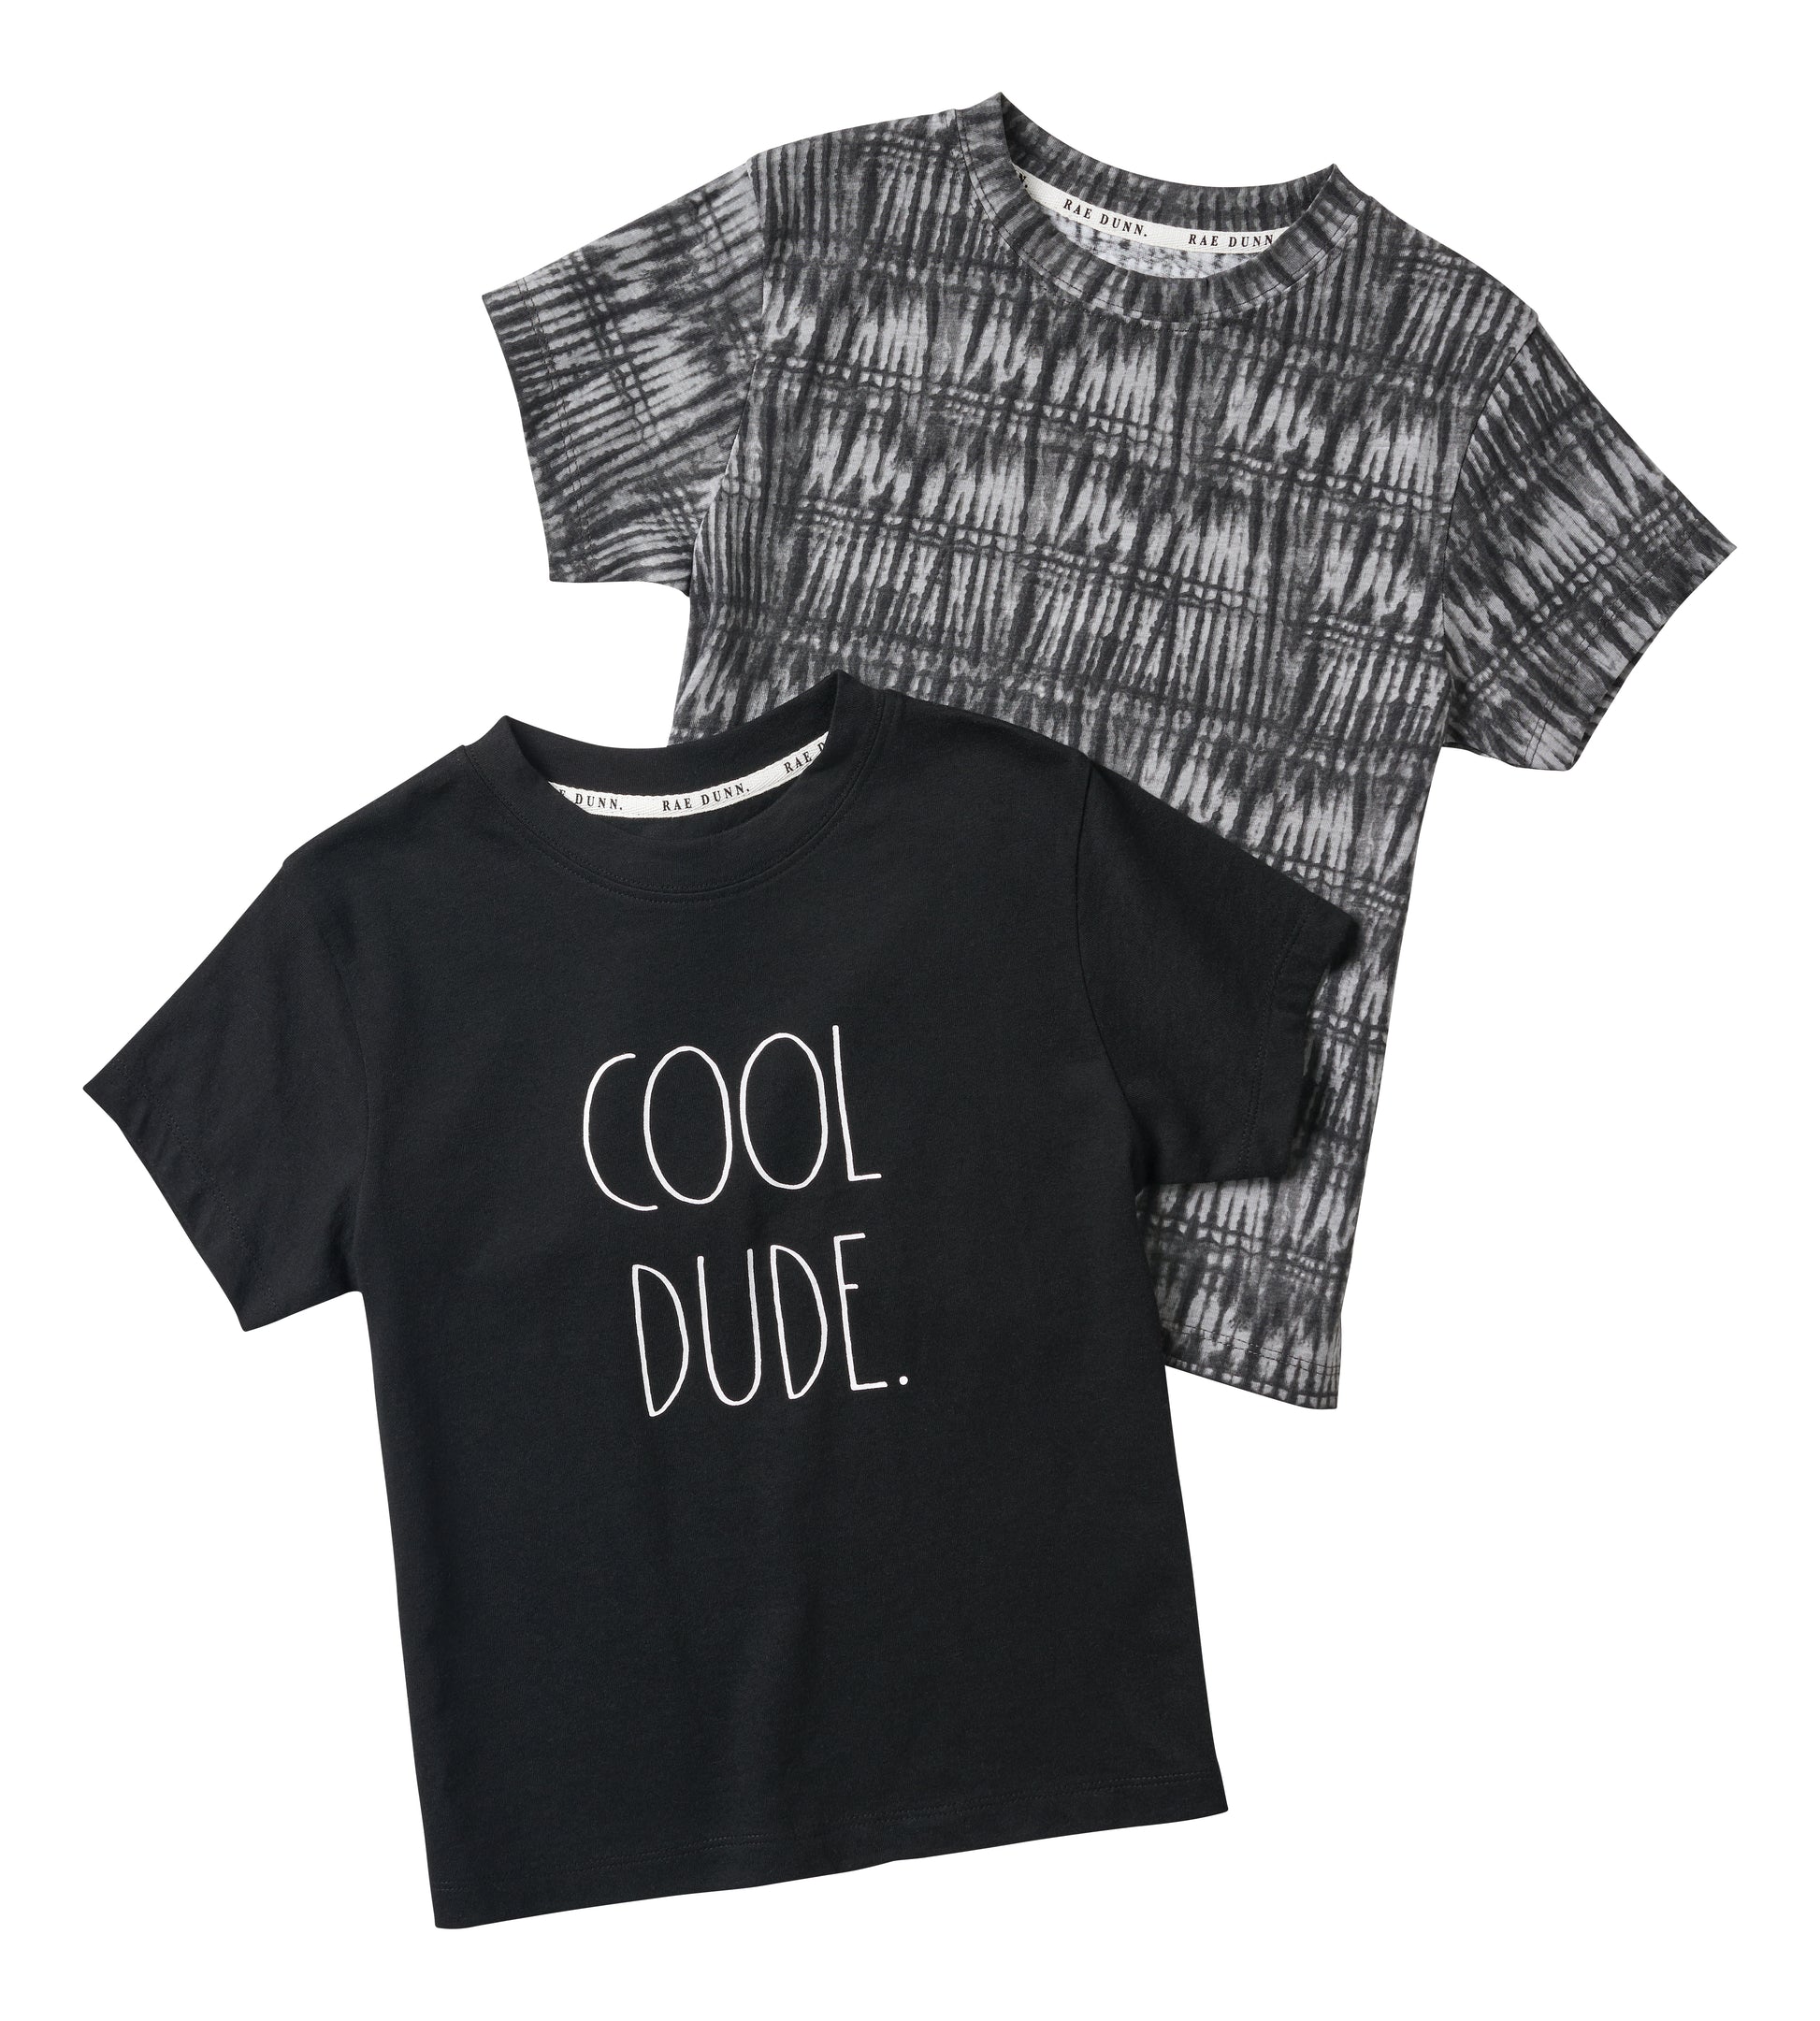 Boys "COOL DUDE" Short Sleeve T-Shirt Set of 2 - Rae Dunn Wear - B T-Shirt